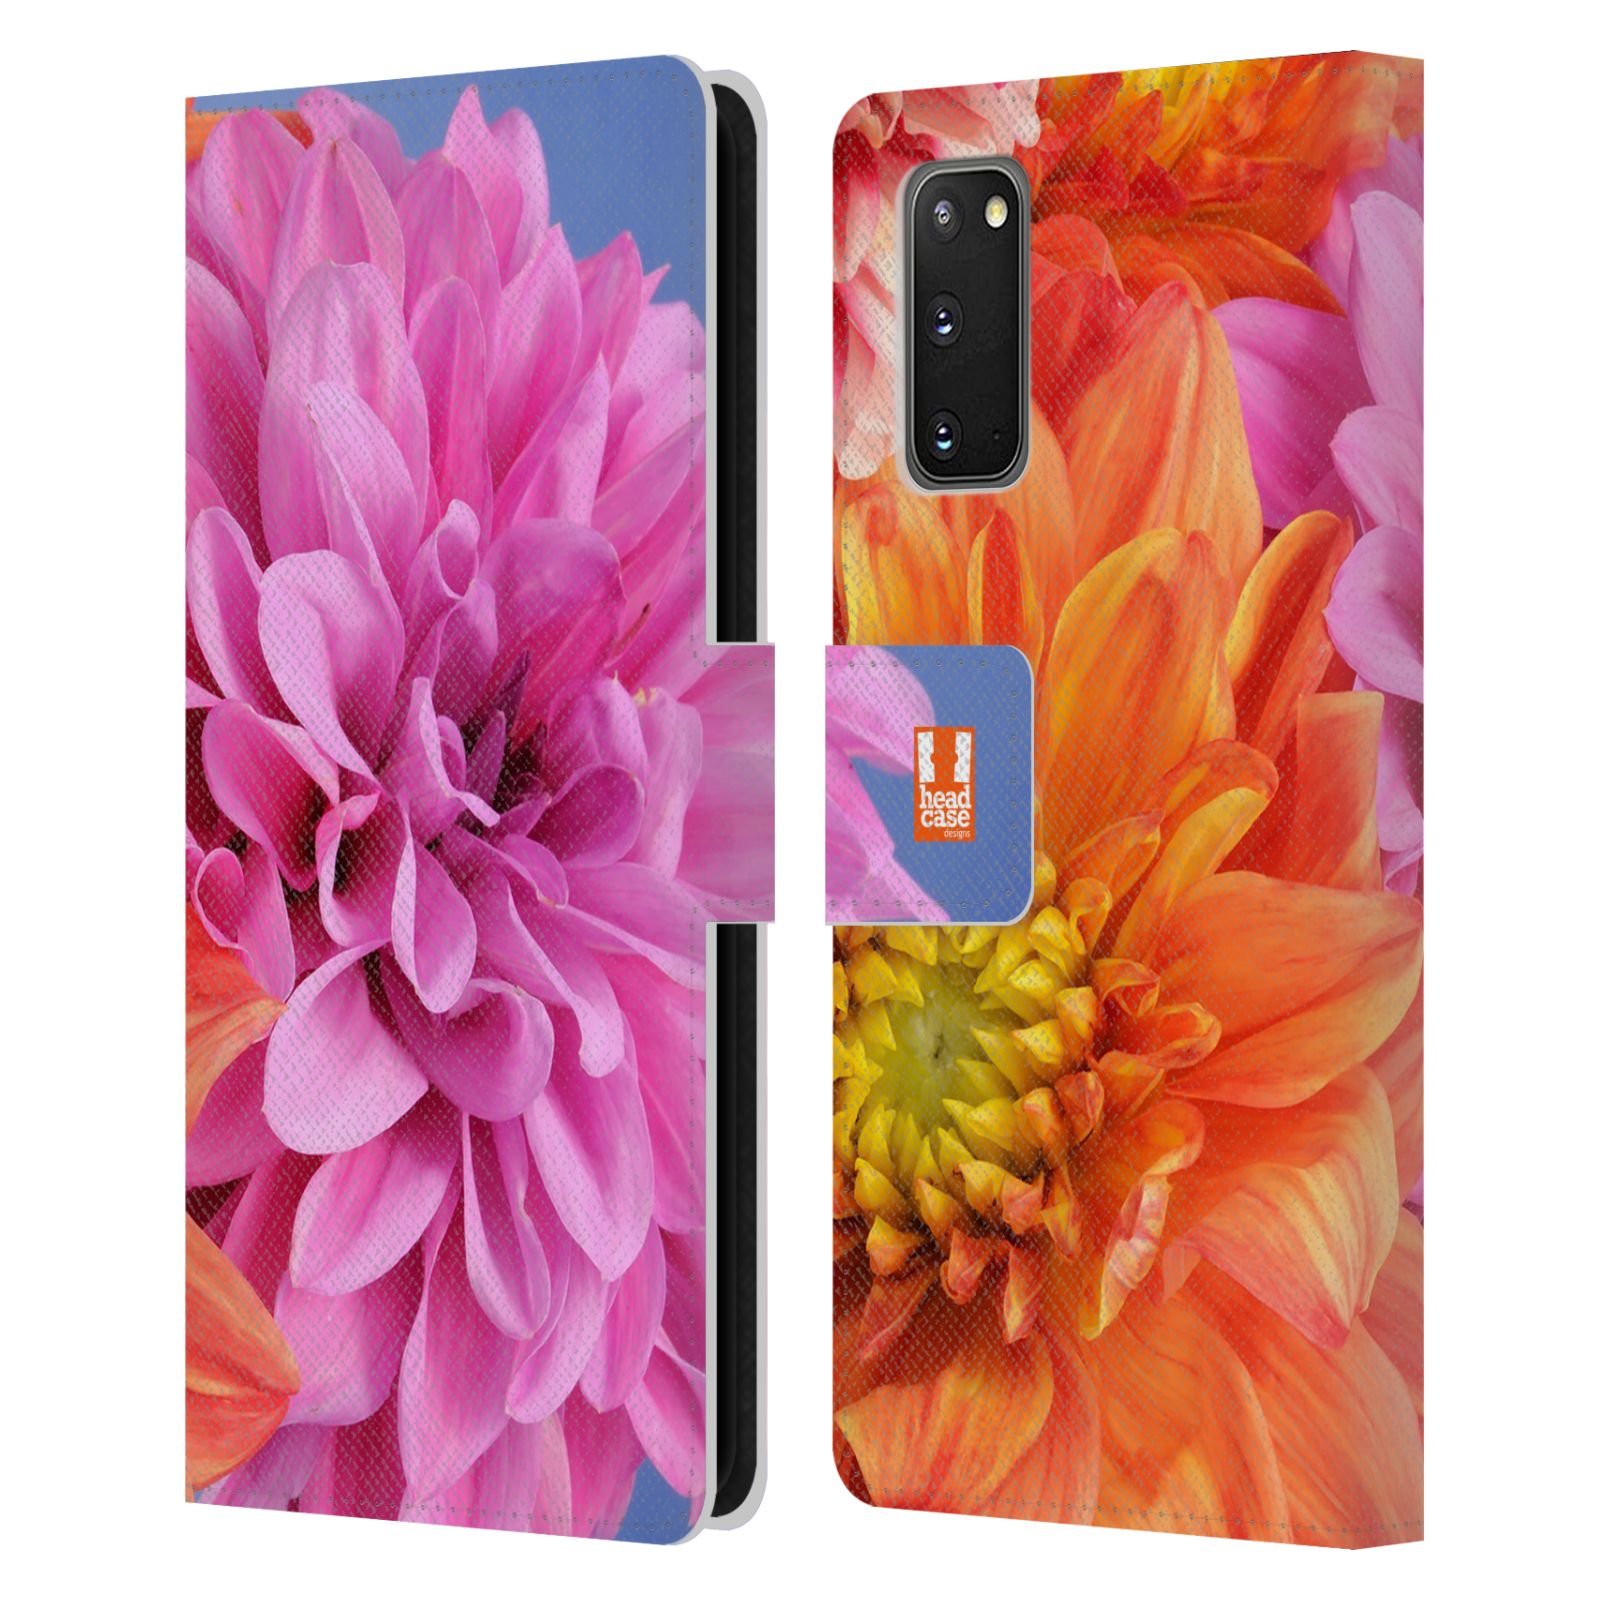 Pouzdro na mobil Samsung Galaxy S20 květy foto Jiřinka růžová a oranžová